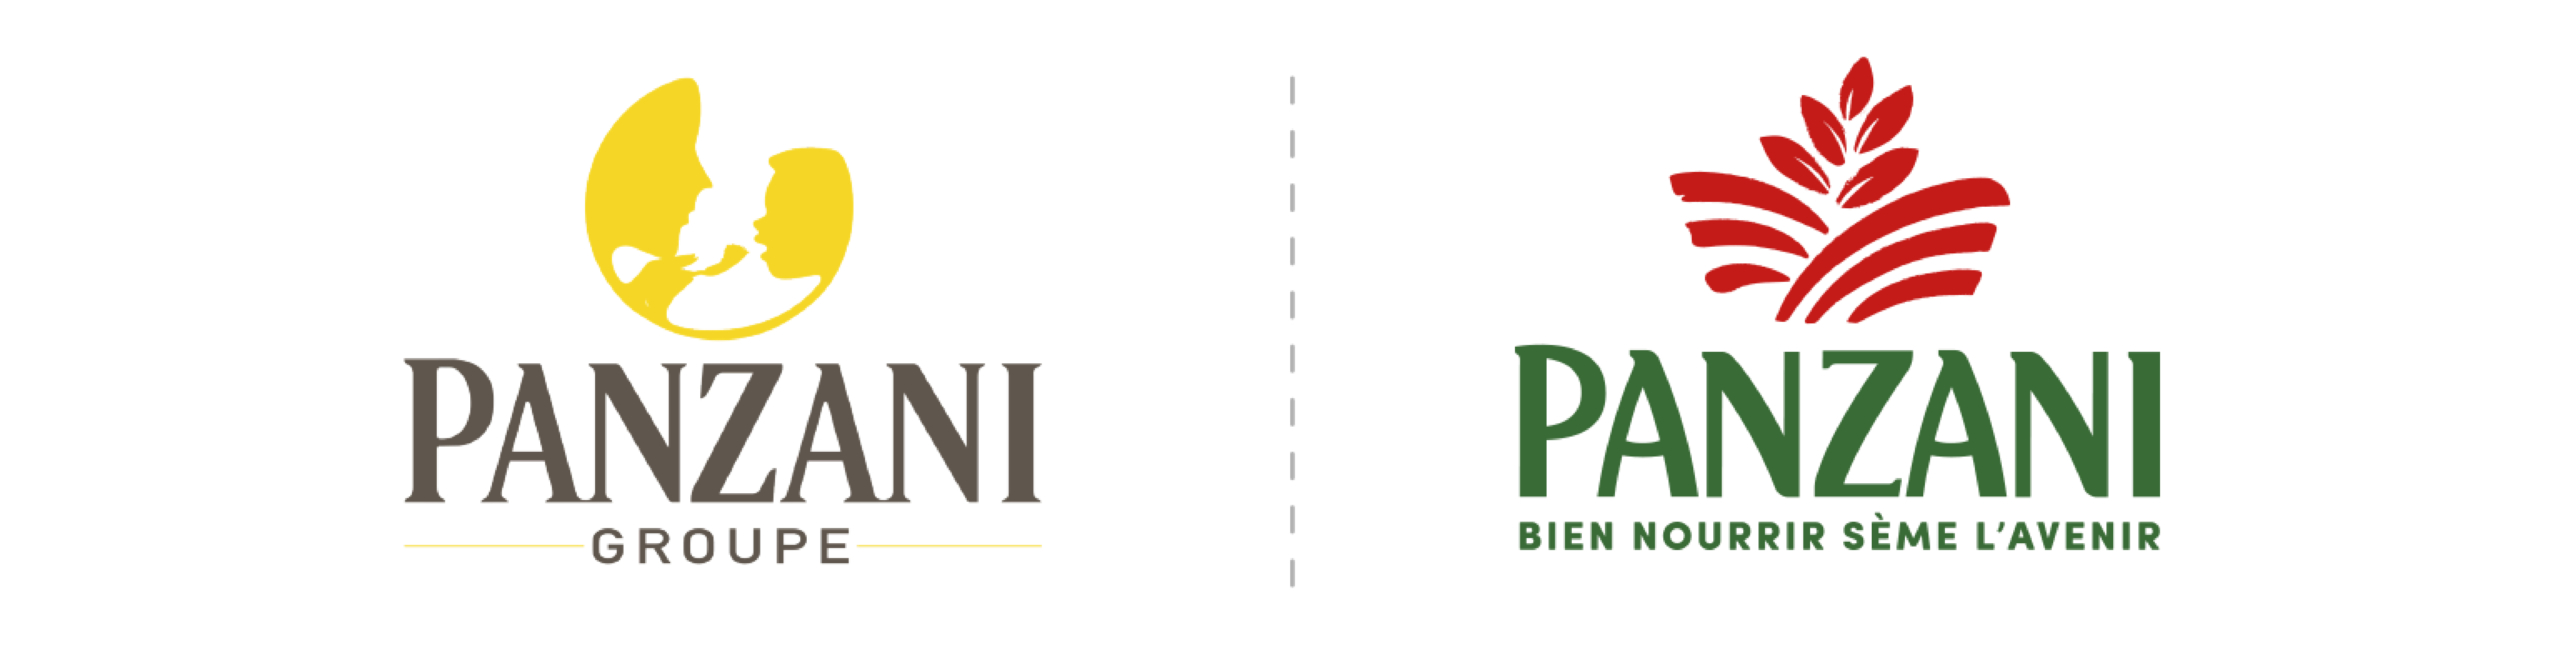 Logo Panzani groupe avant et après